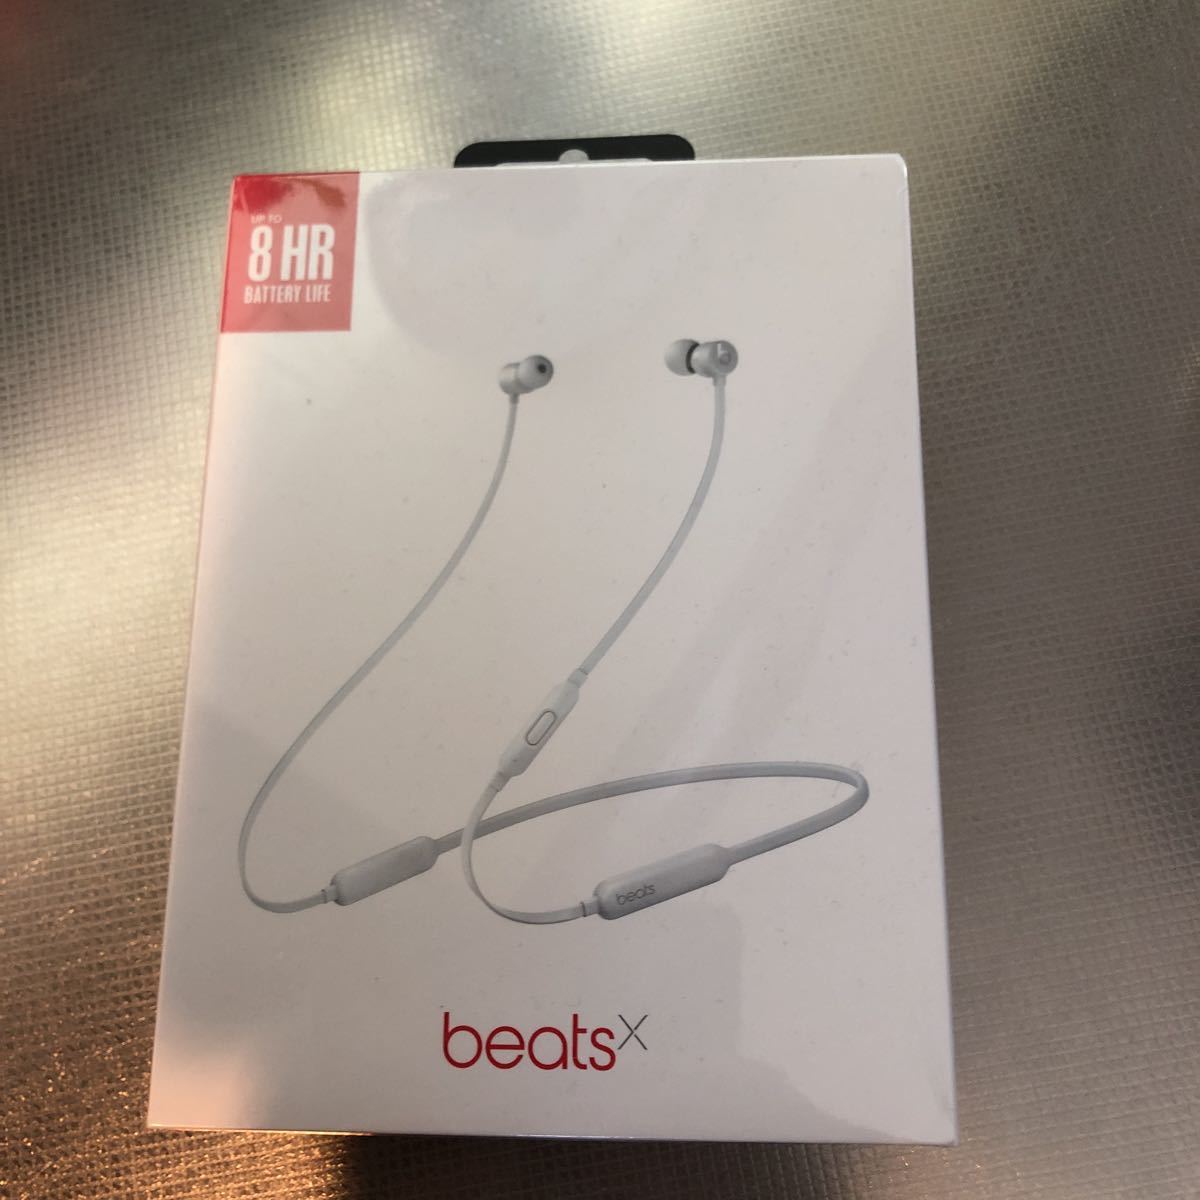 BeatsX ワイヤレスイヤホン -Apple W1ヘッドフォンチップ、Class 1 Bluetooth、 マグネット式イヤーバッド- サテンシルバー